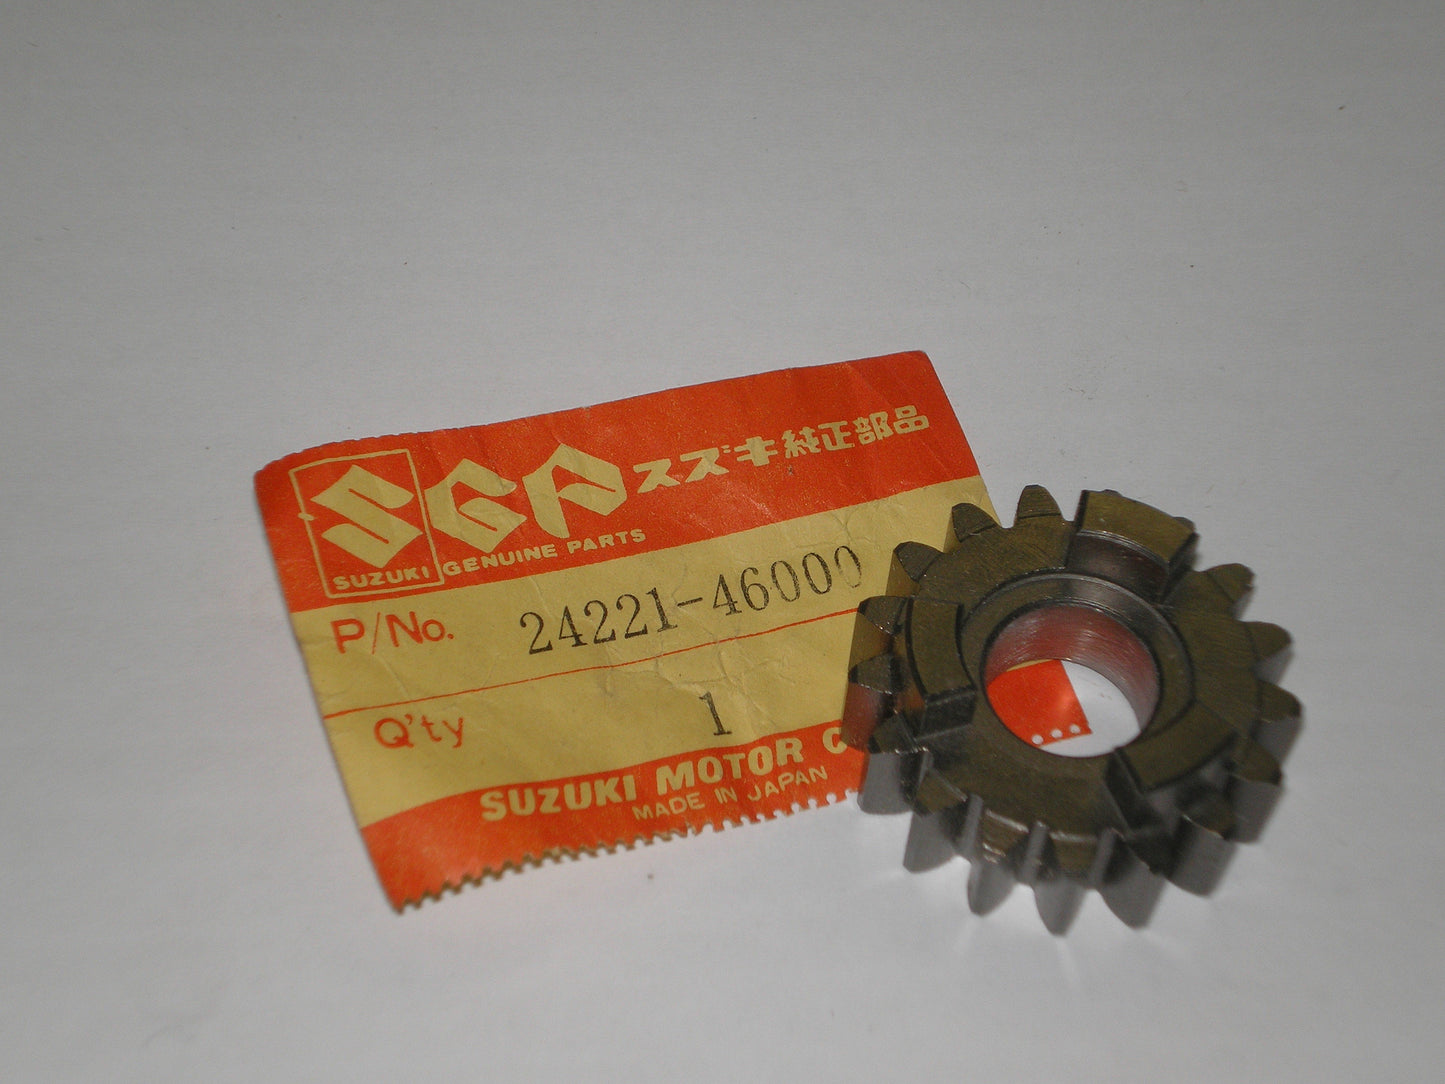 SUZUKI RM80 1977-1979 Transmission Second Drive Gear 24221-46000